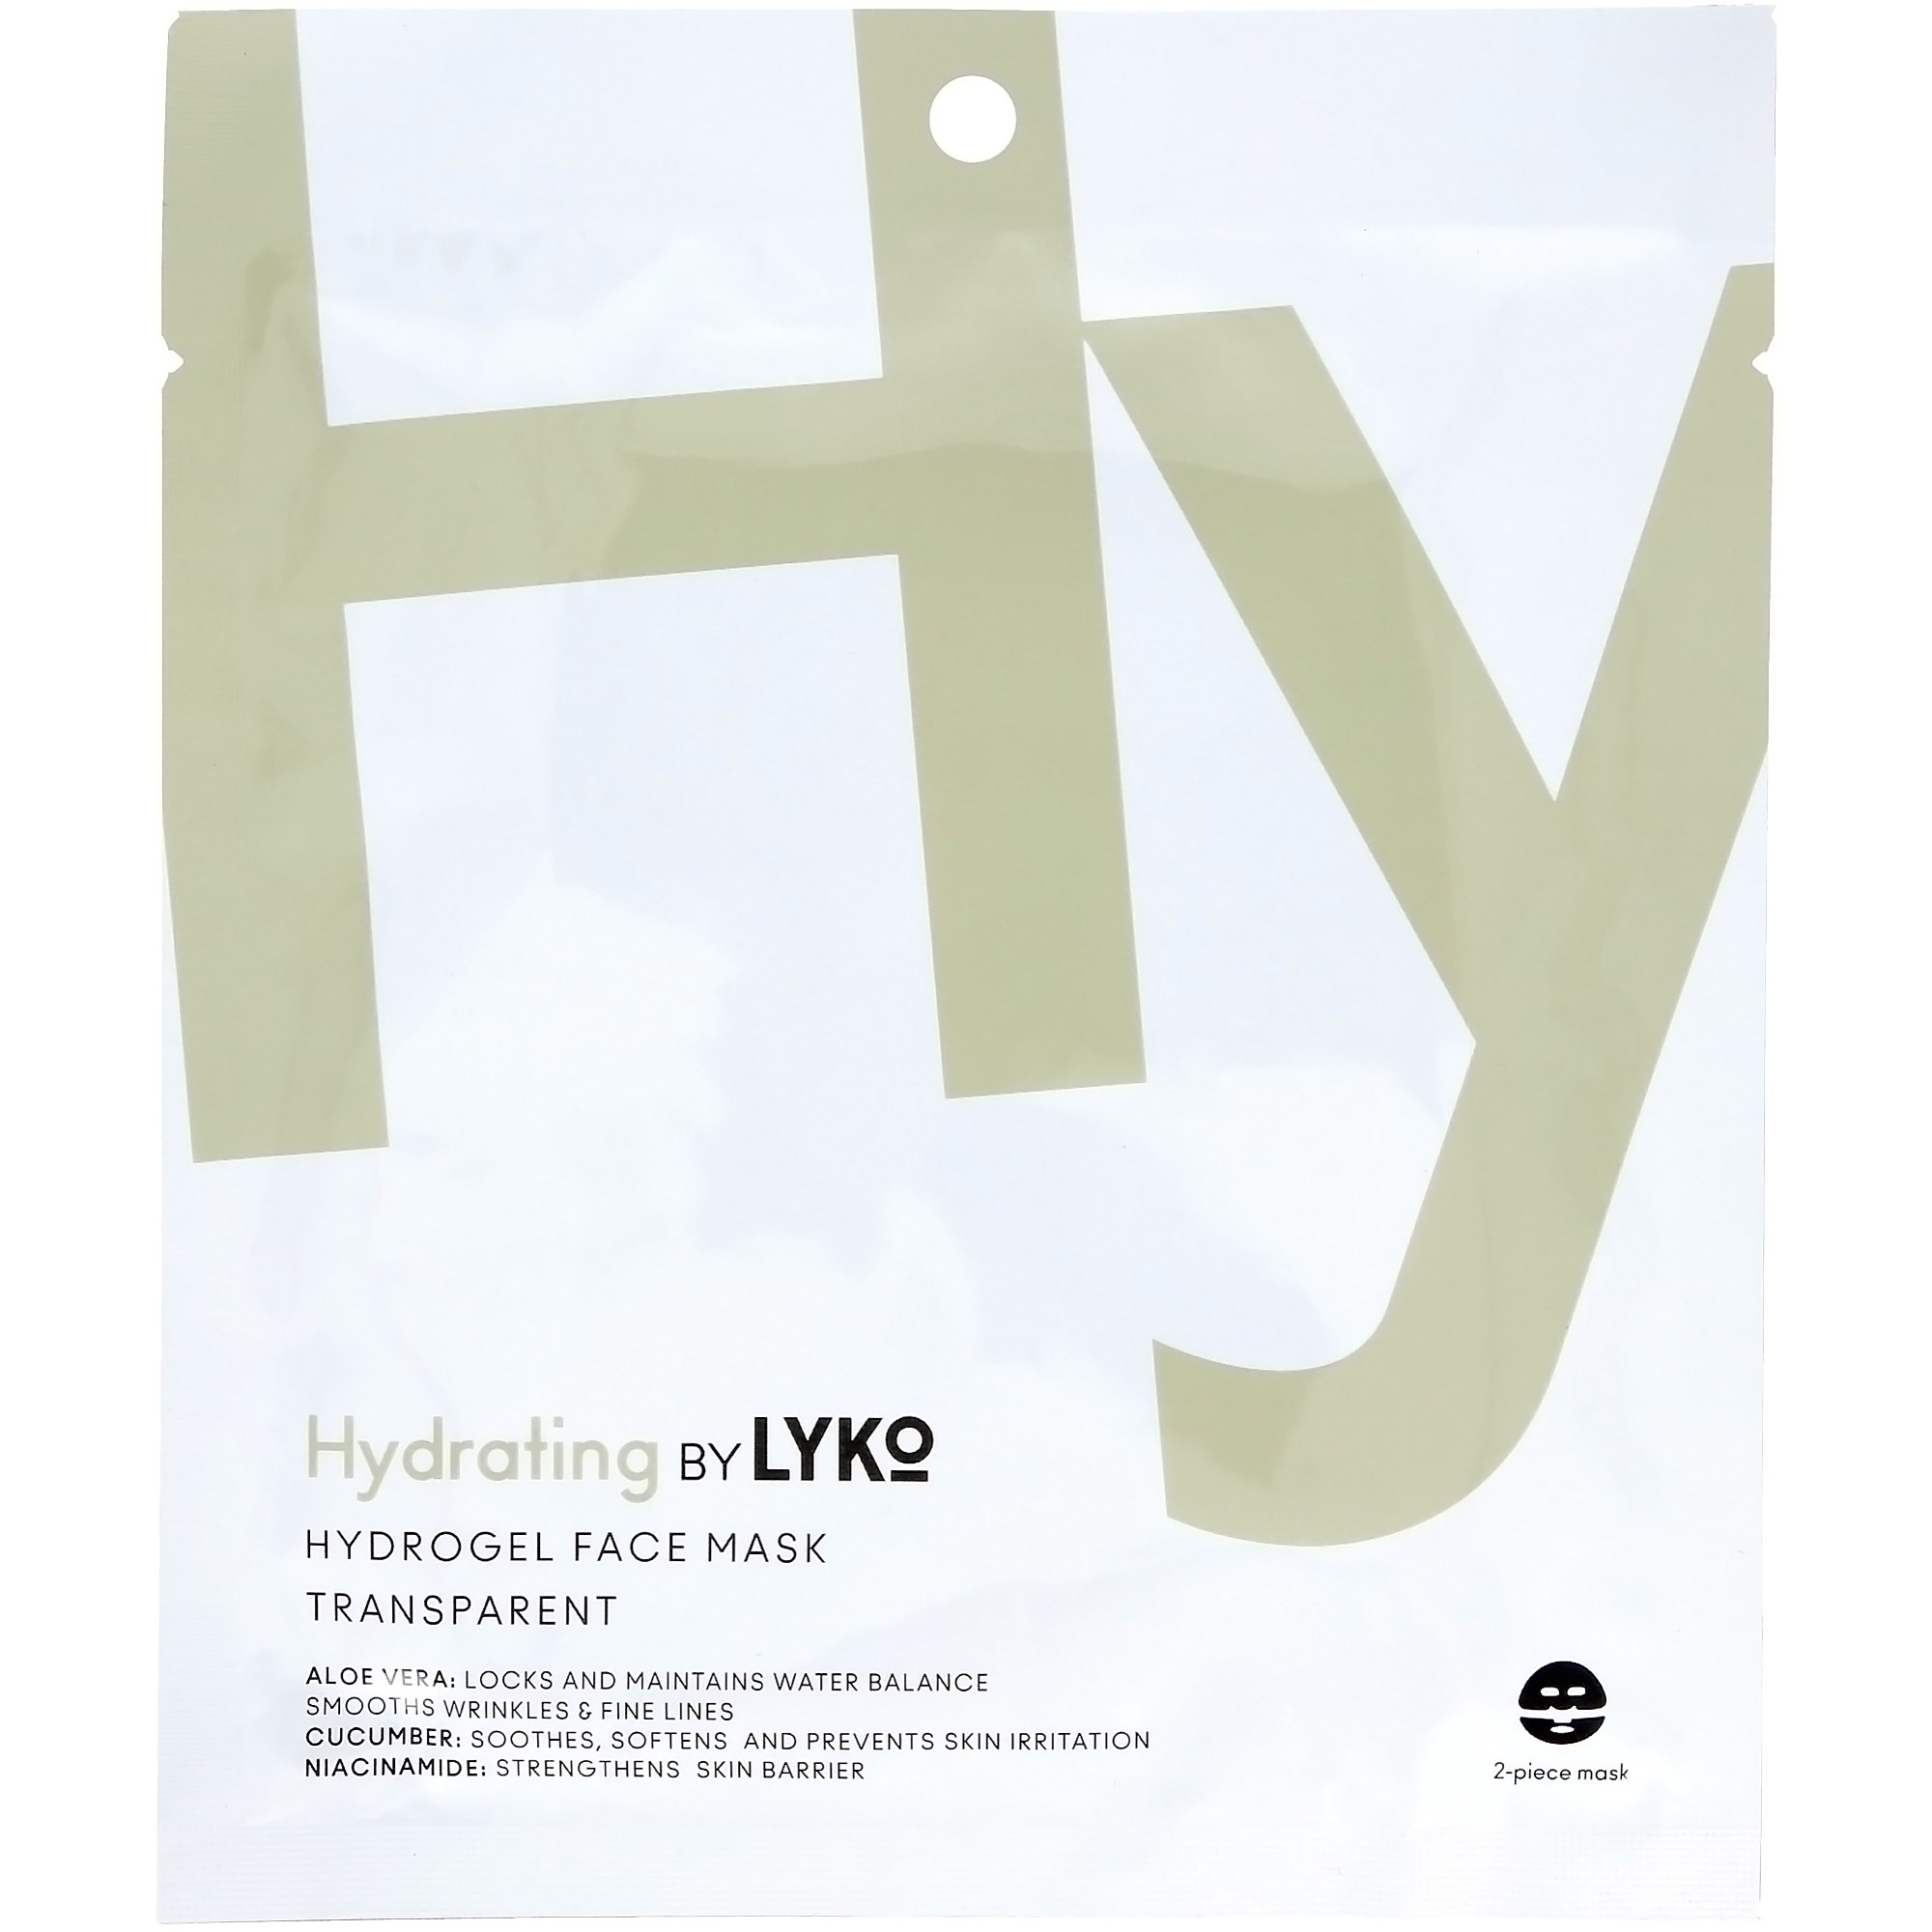 Läs mer om By Lyko Hydrating Hydrogel Face Mask